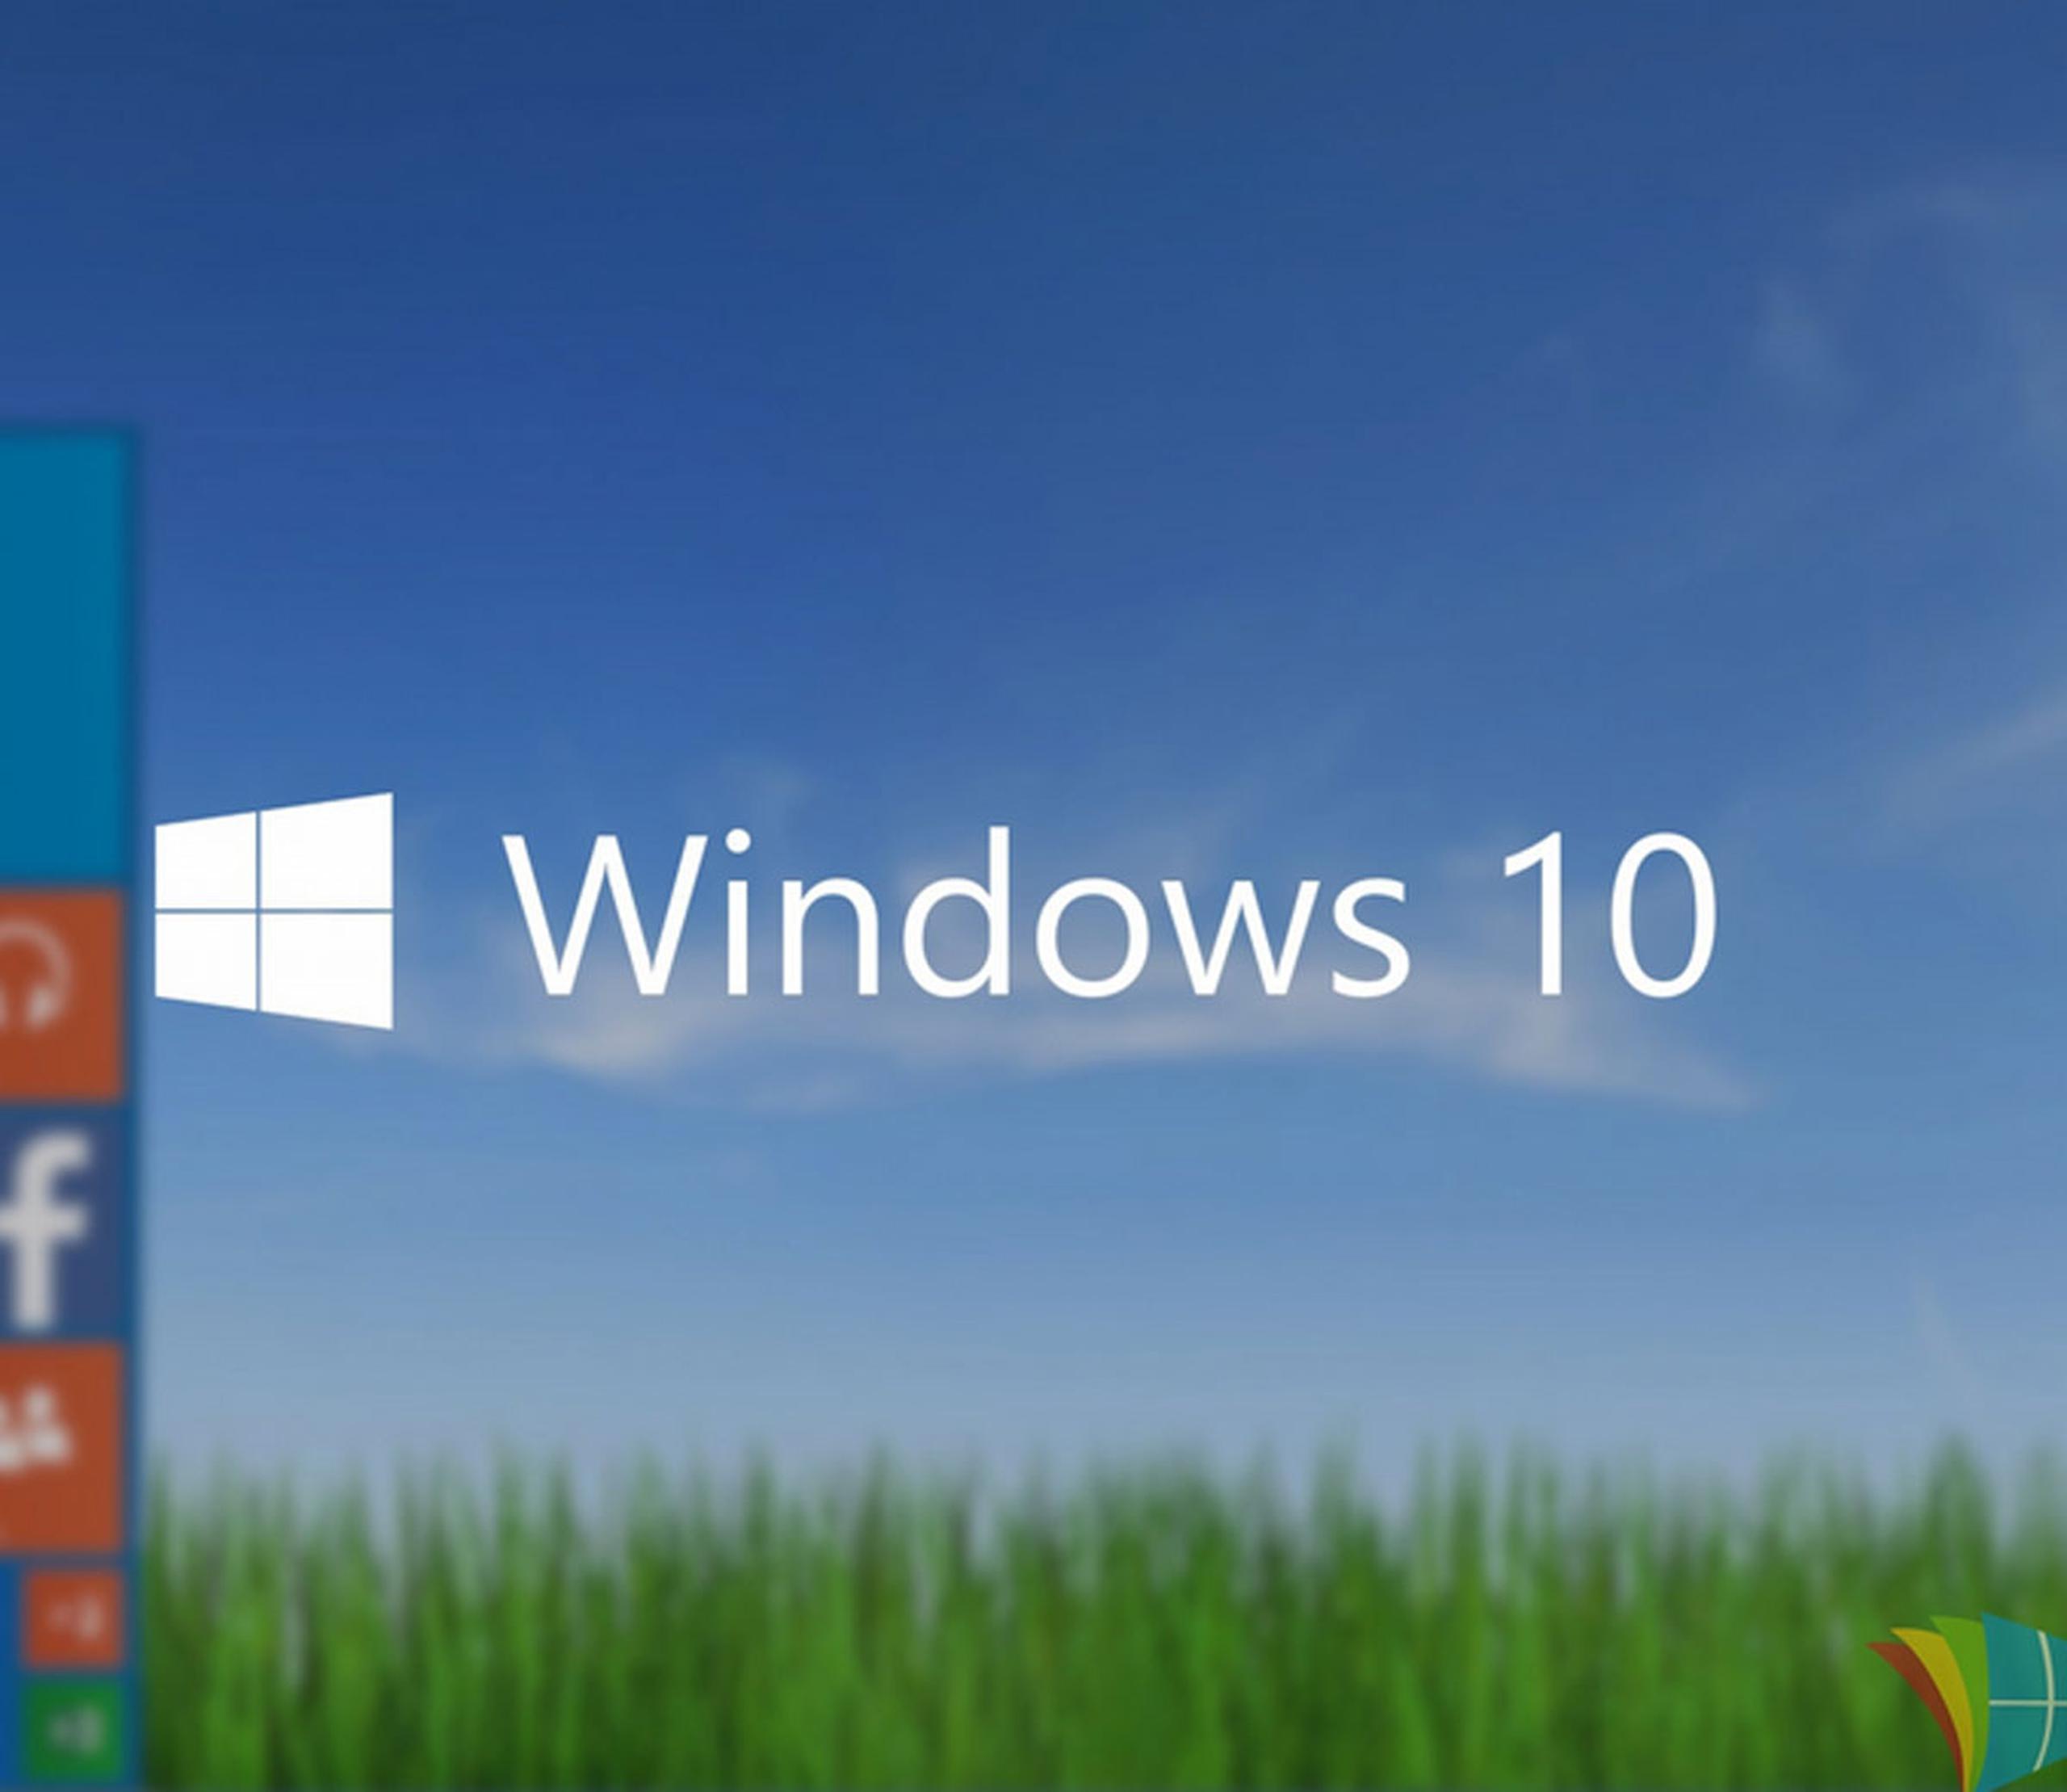 La empresa tecnológica ofreció la actualización de forma gratuita con el objetivo de lograr 1,000 millones de usuarios de Windows 10 en los próximos dos años.(Captura de internet)